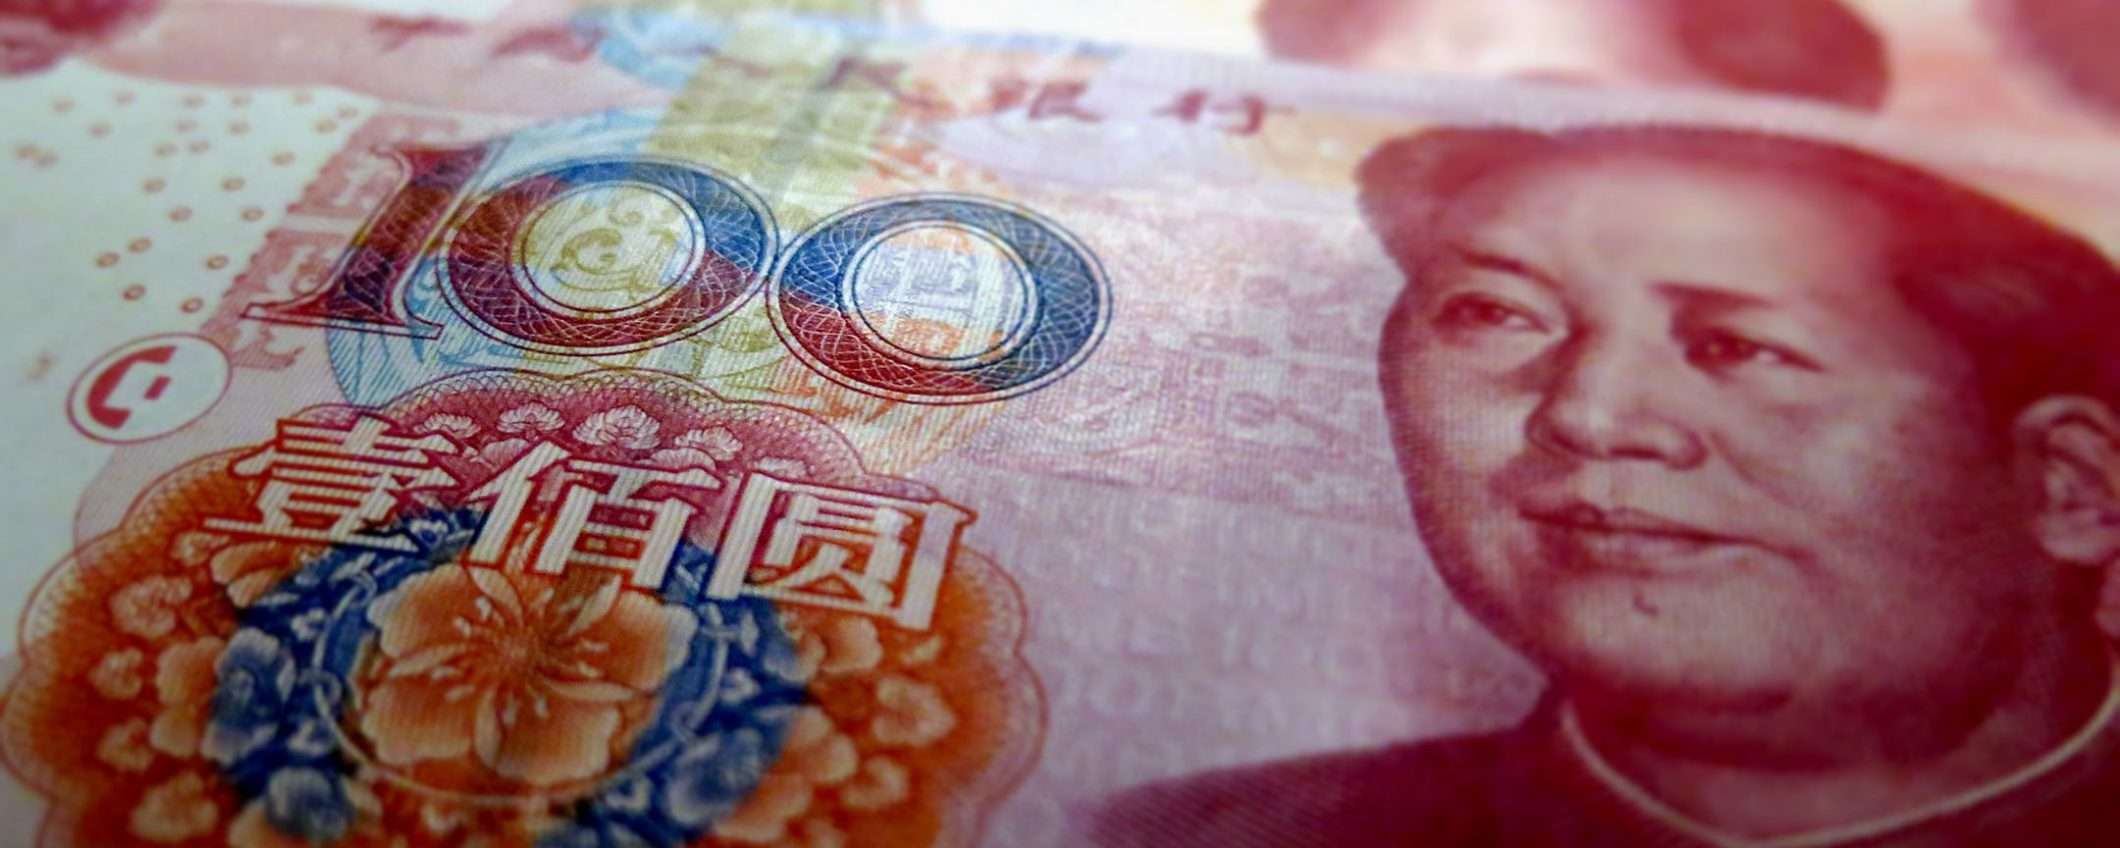 Cina, lo stipendio arriva con Yuan digitali